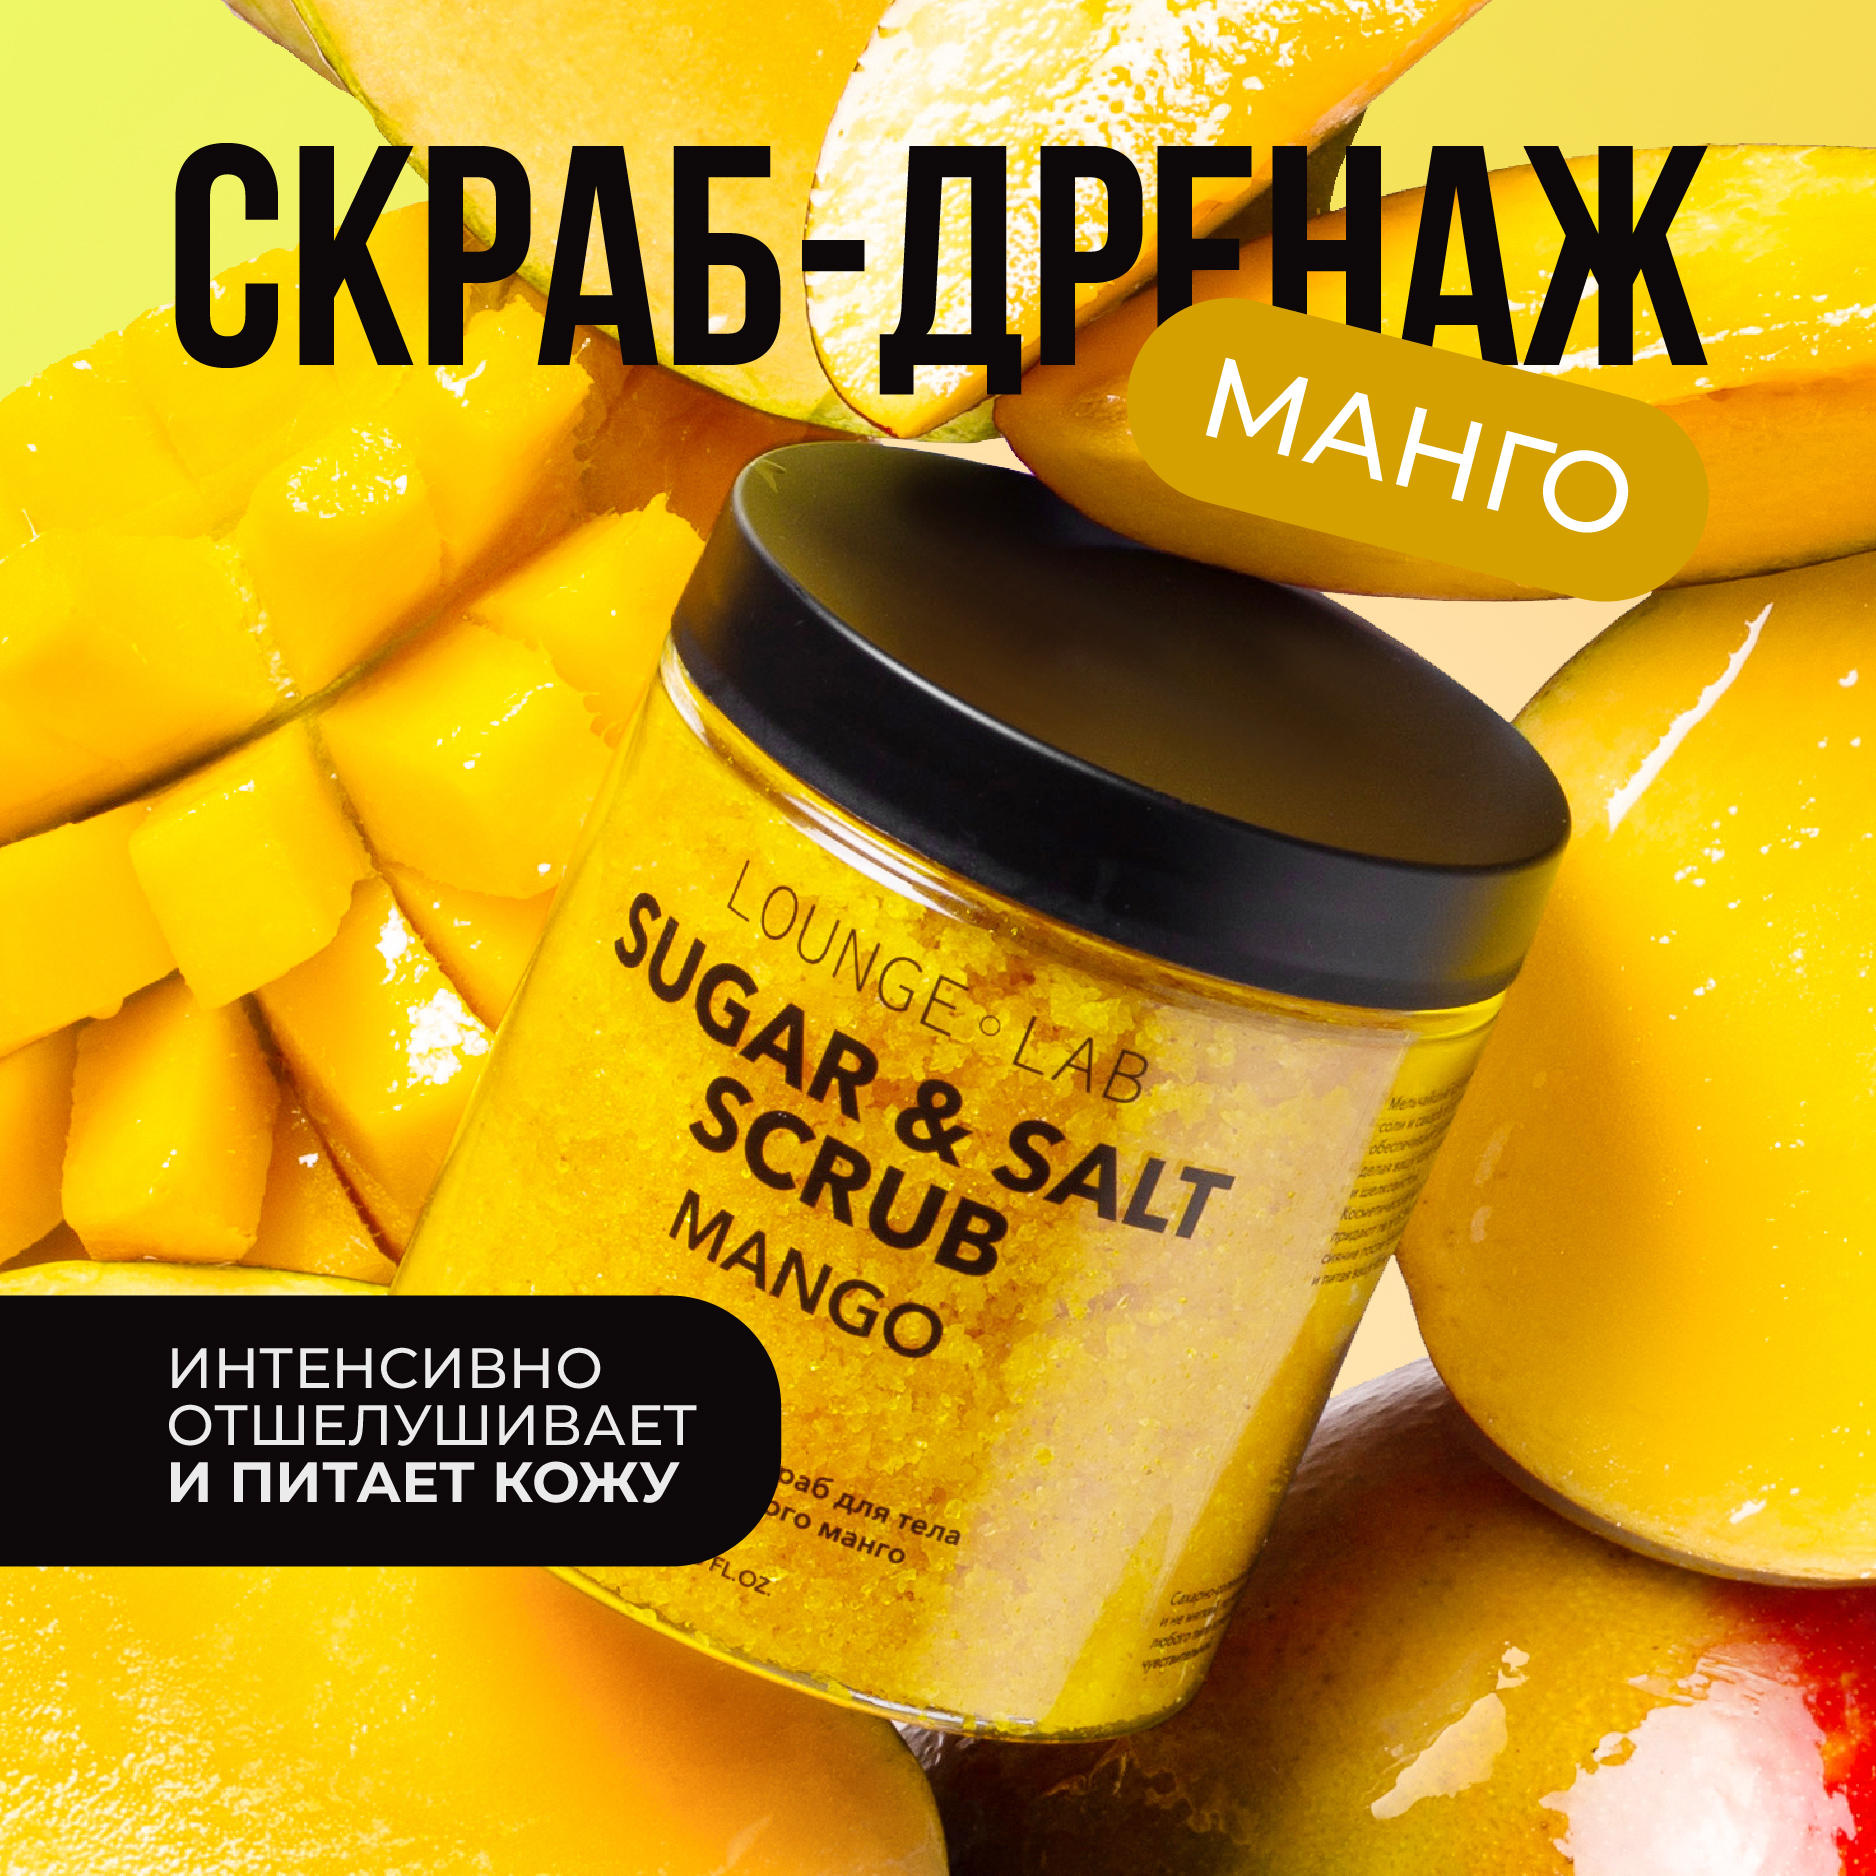 Скраб для тела LOUNGE LAB Сочный манго антицеллюлитный сахарно-солевой 250 мл delicare скраб для тела сахарный манго 250